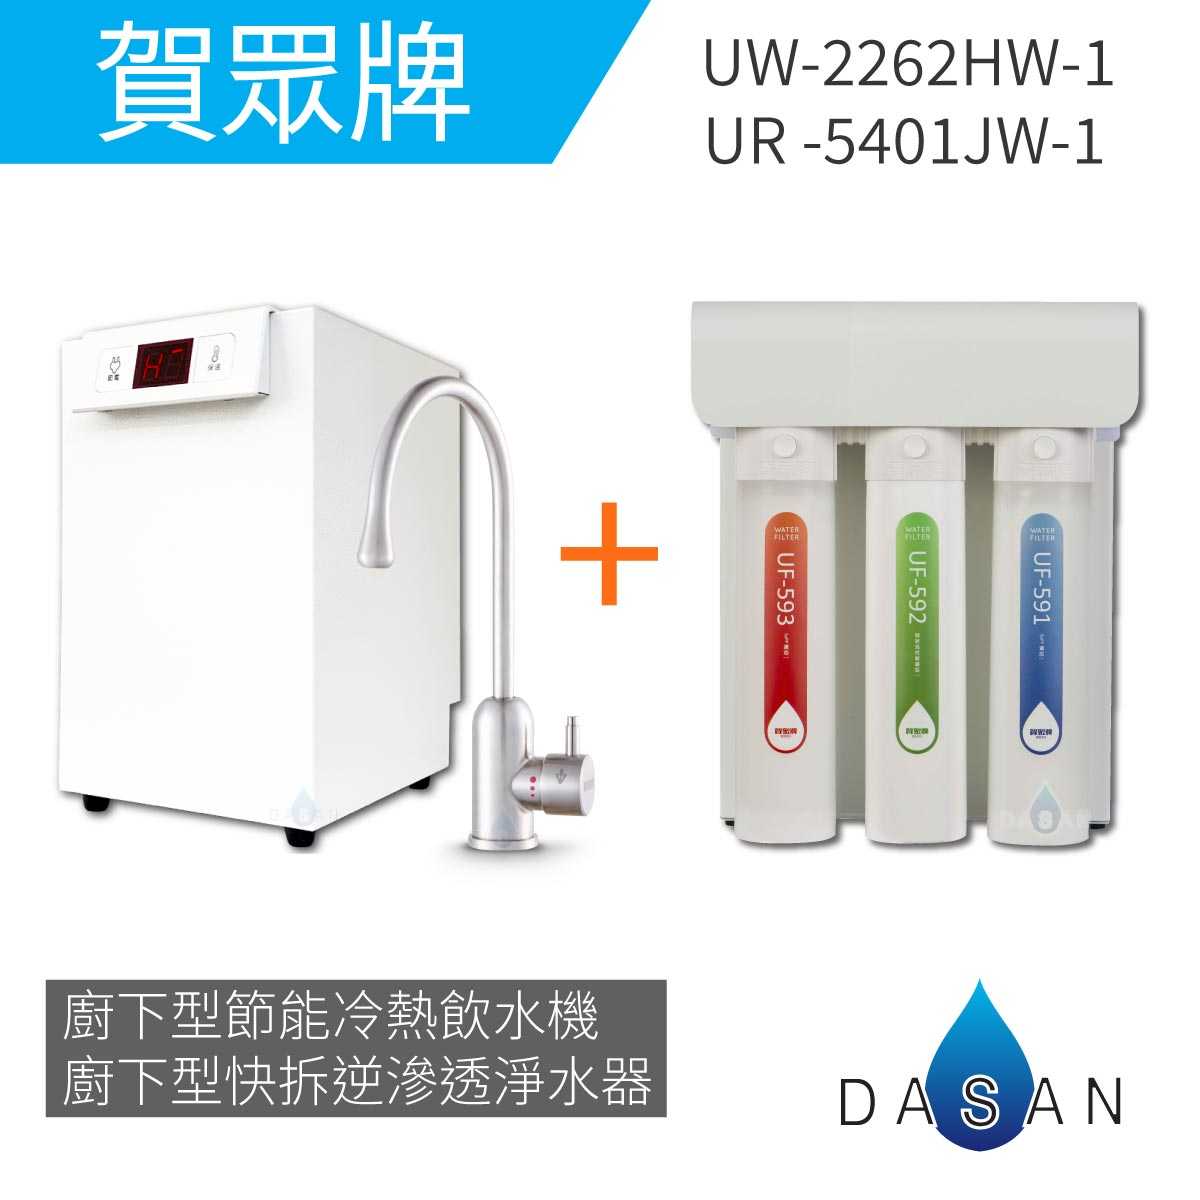 【賀眾牌】UW-2262HW-1廚下型節能冷熱飲水機加熱器+UR-5401JW-1廚下型快拆式逆滲透淨水器 2262